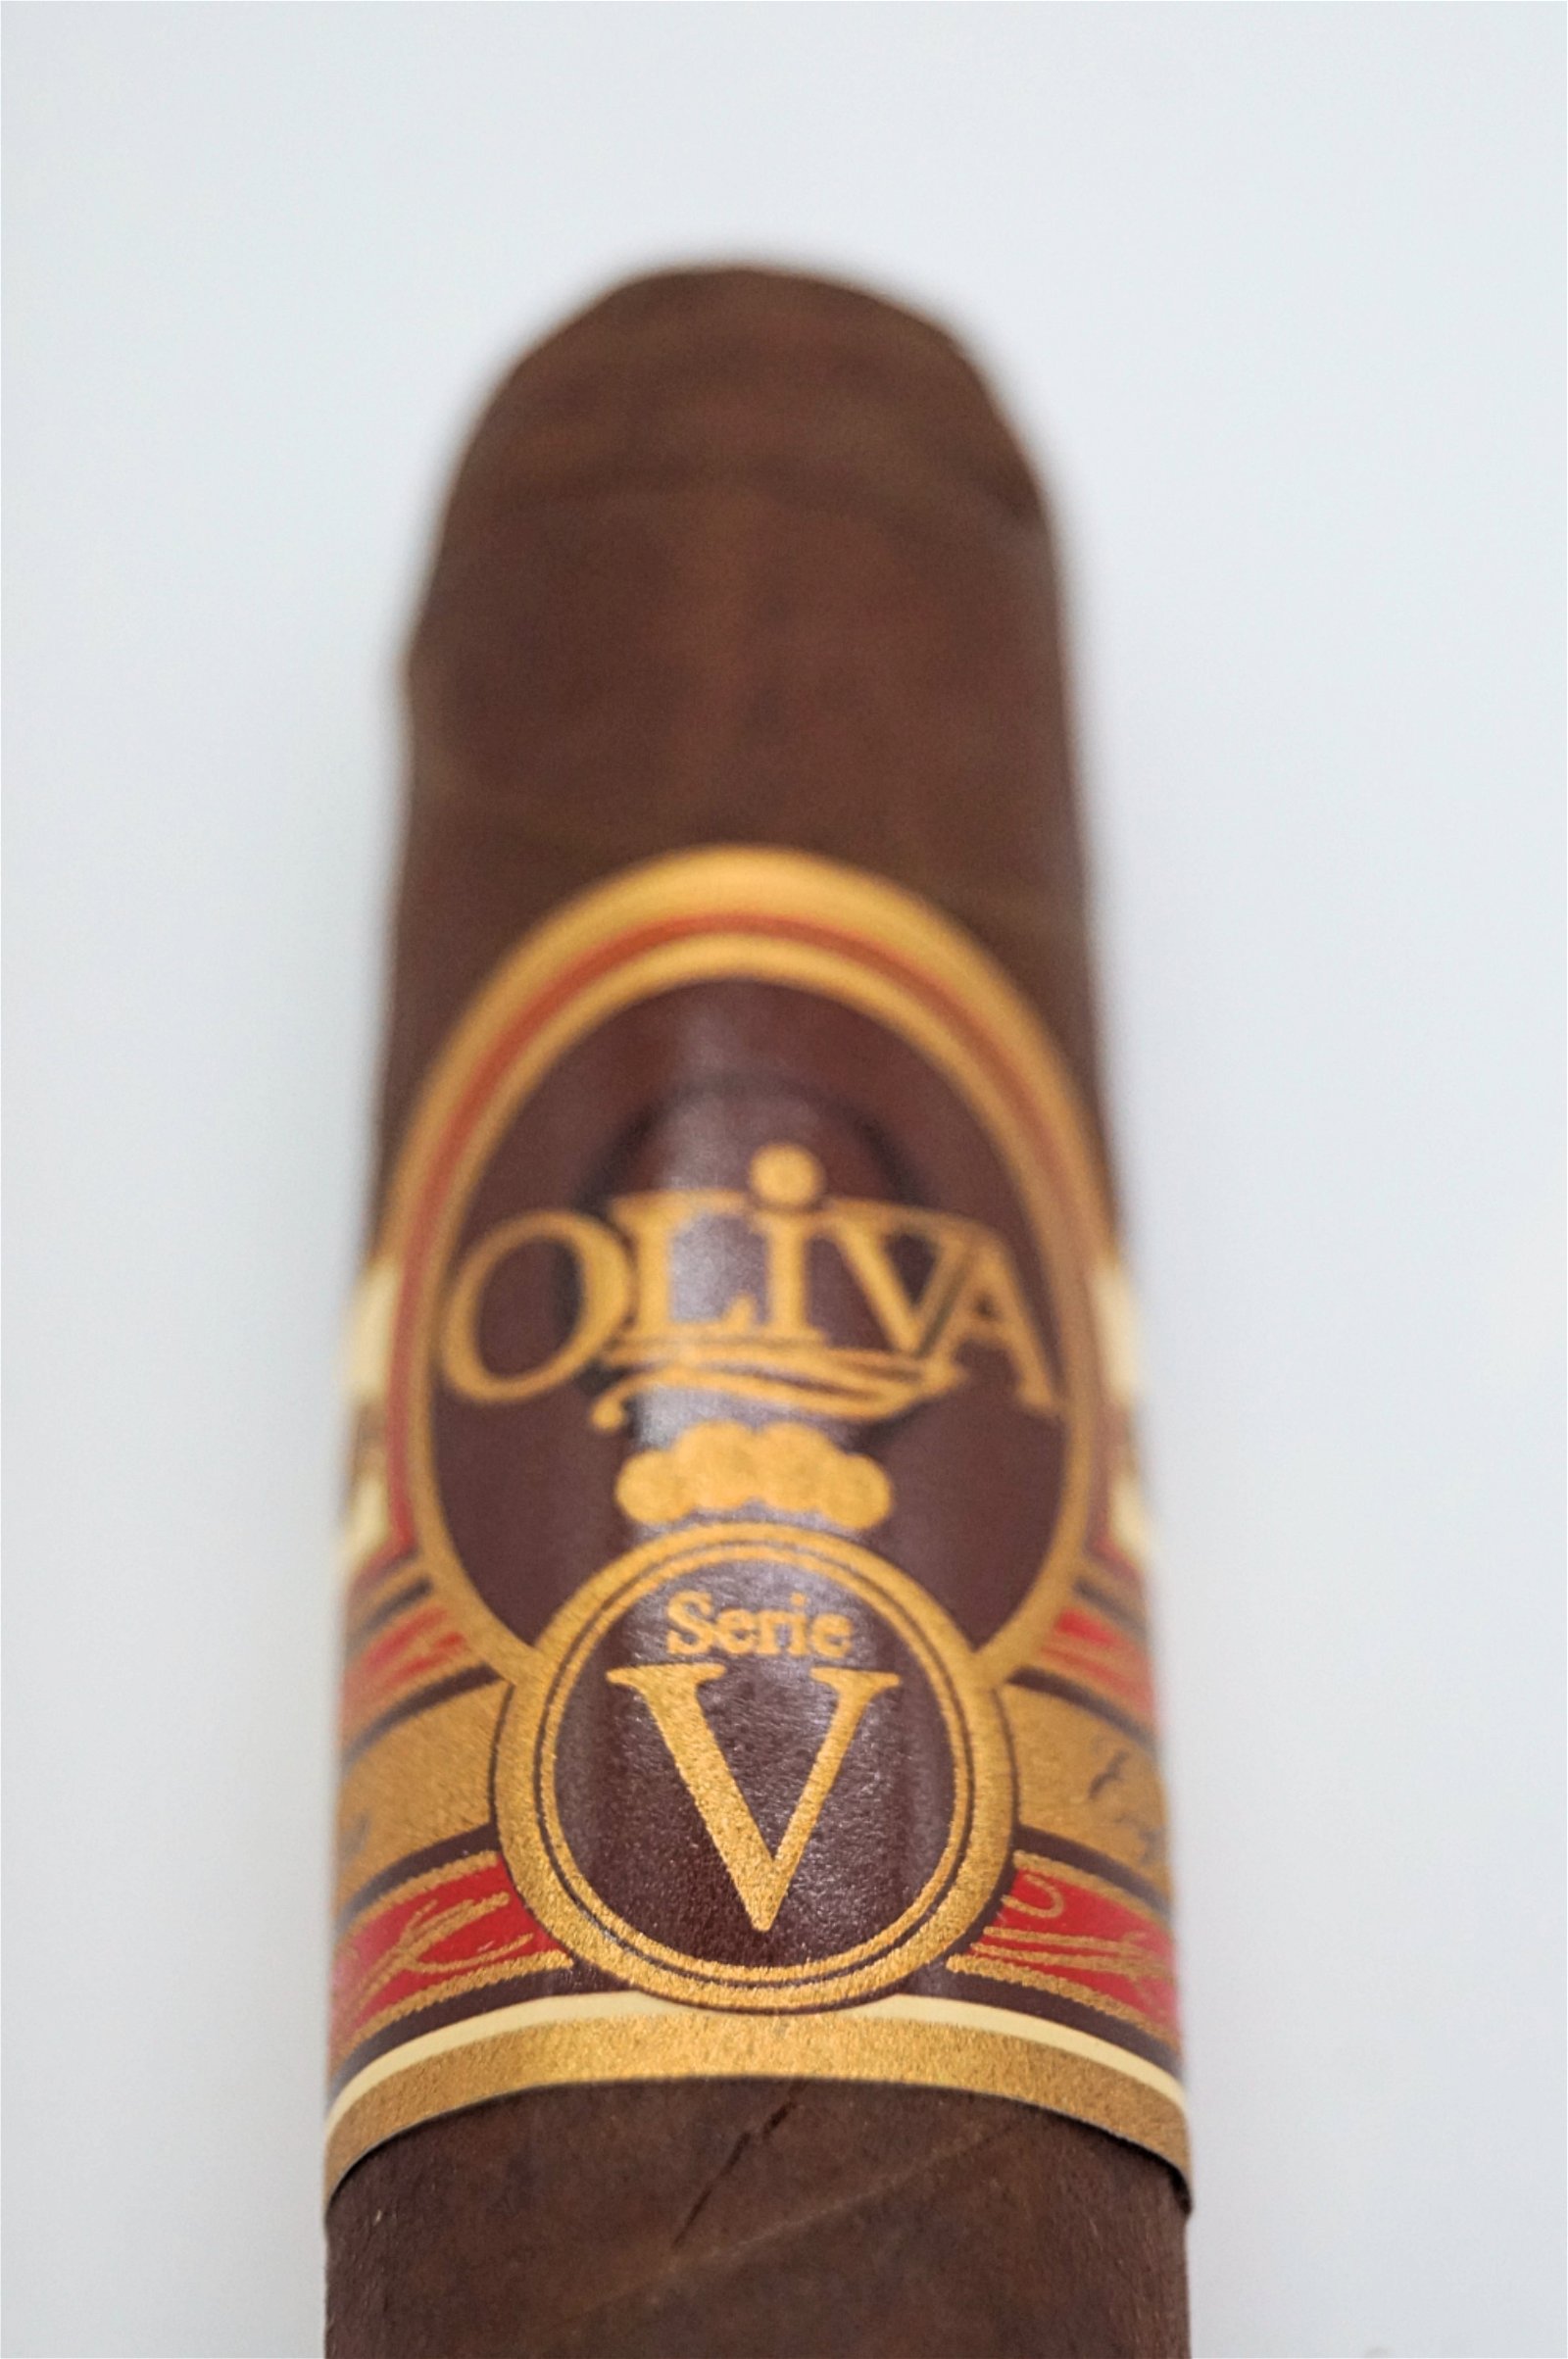 Oliva Serie V Double Toro